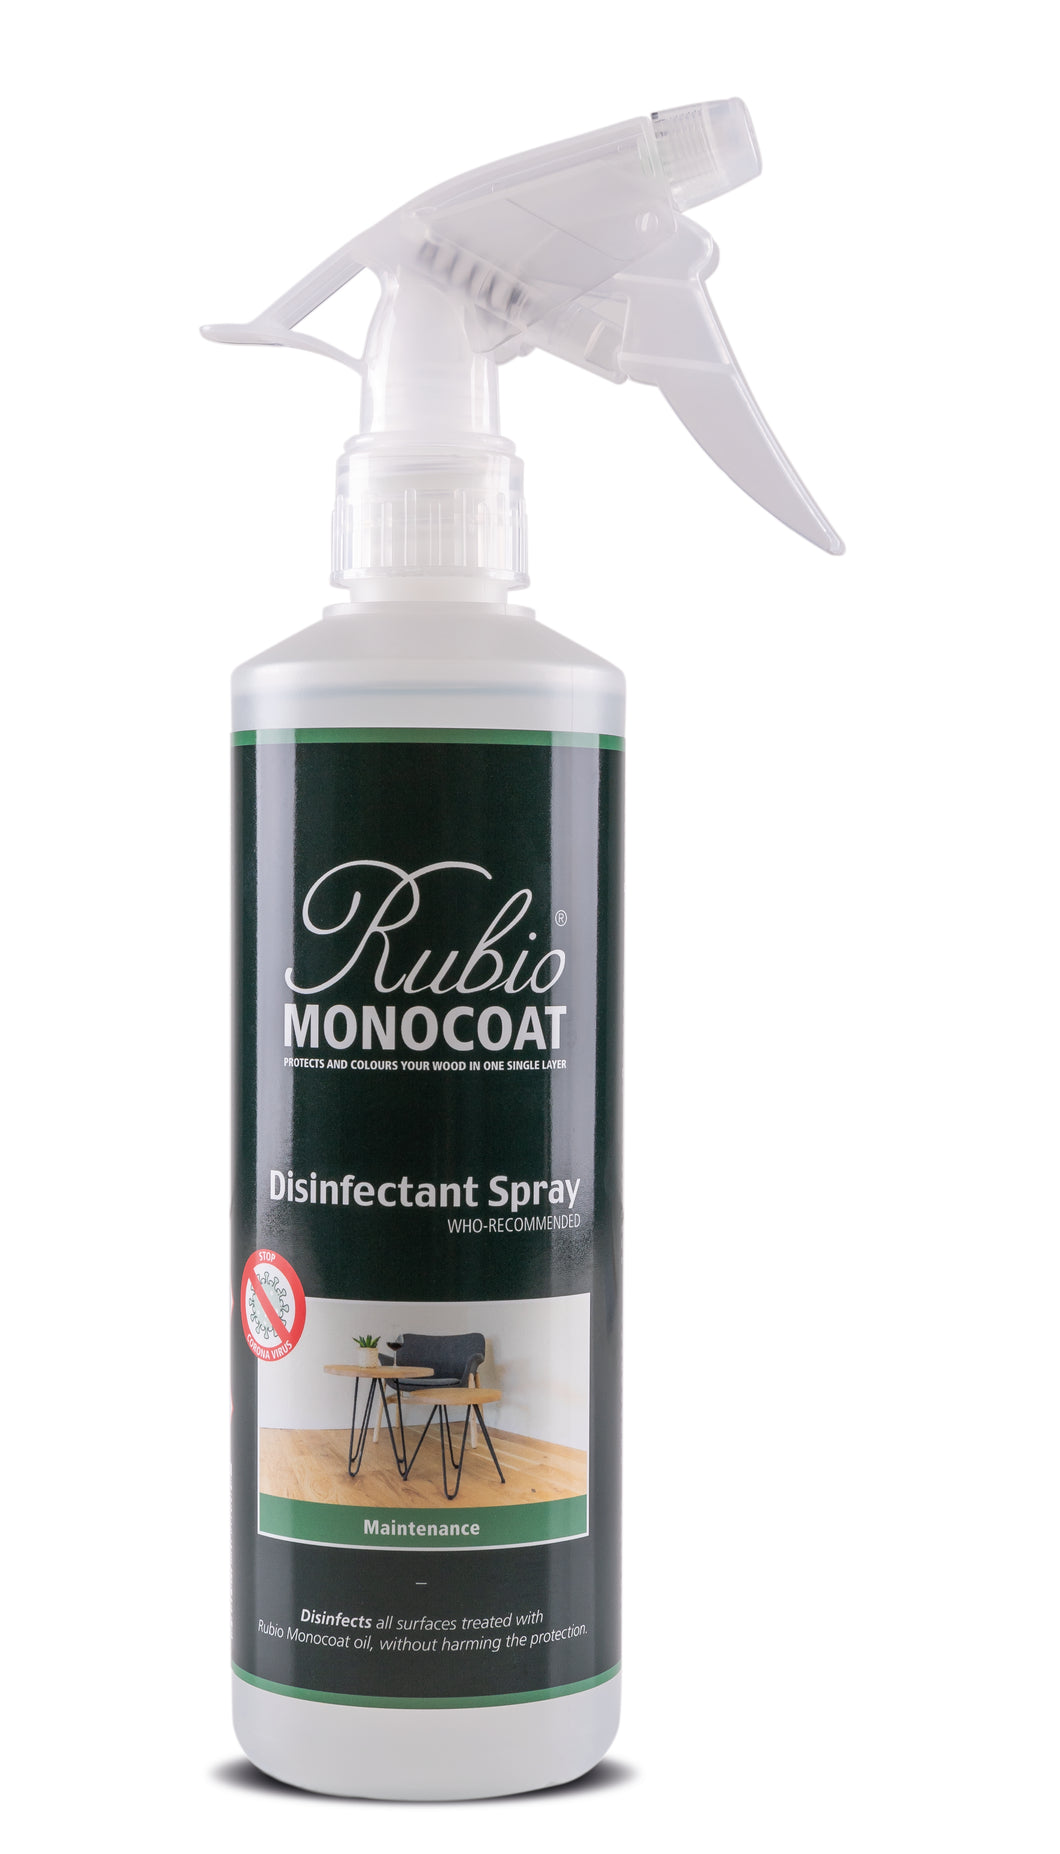 Rubio Monocoat Disinfectant Spray